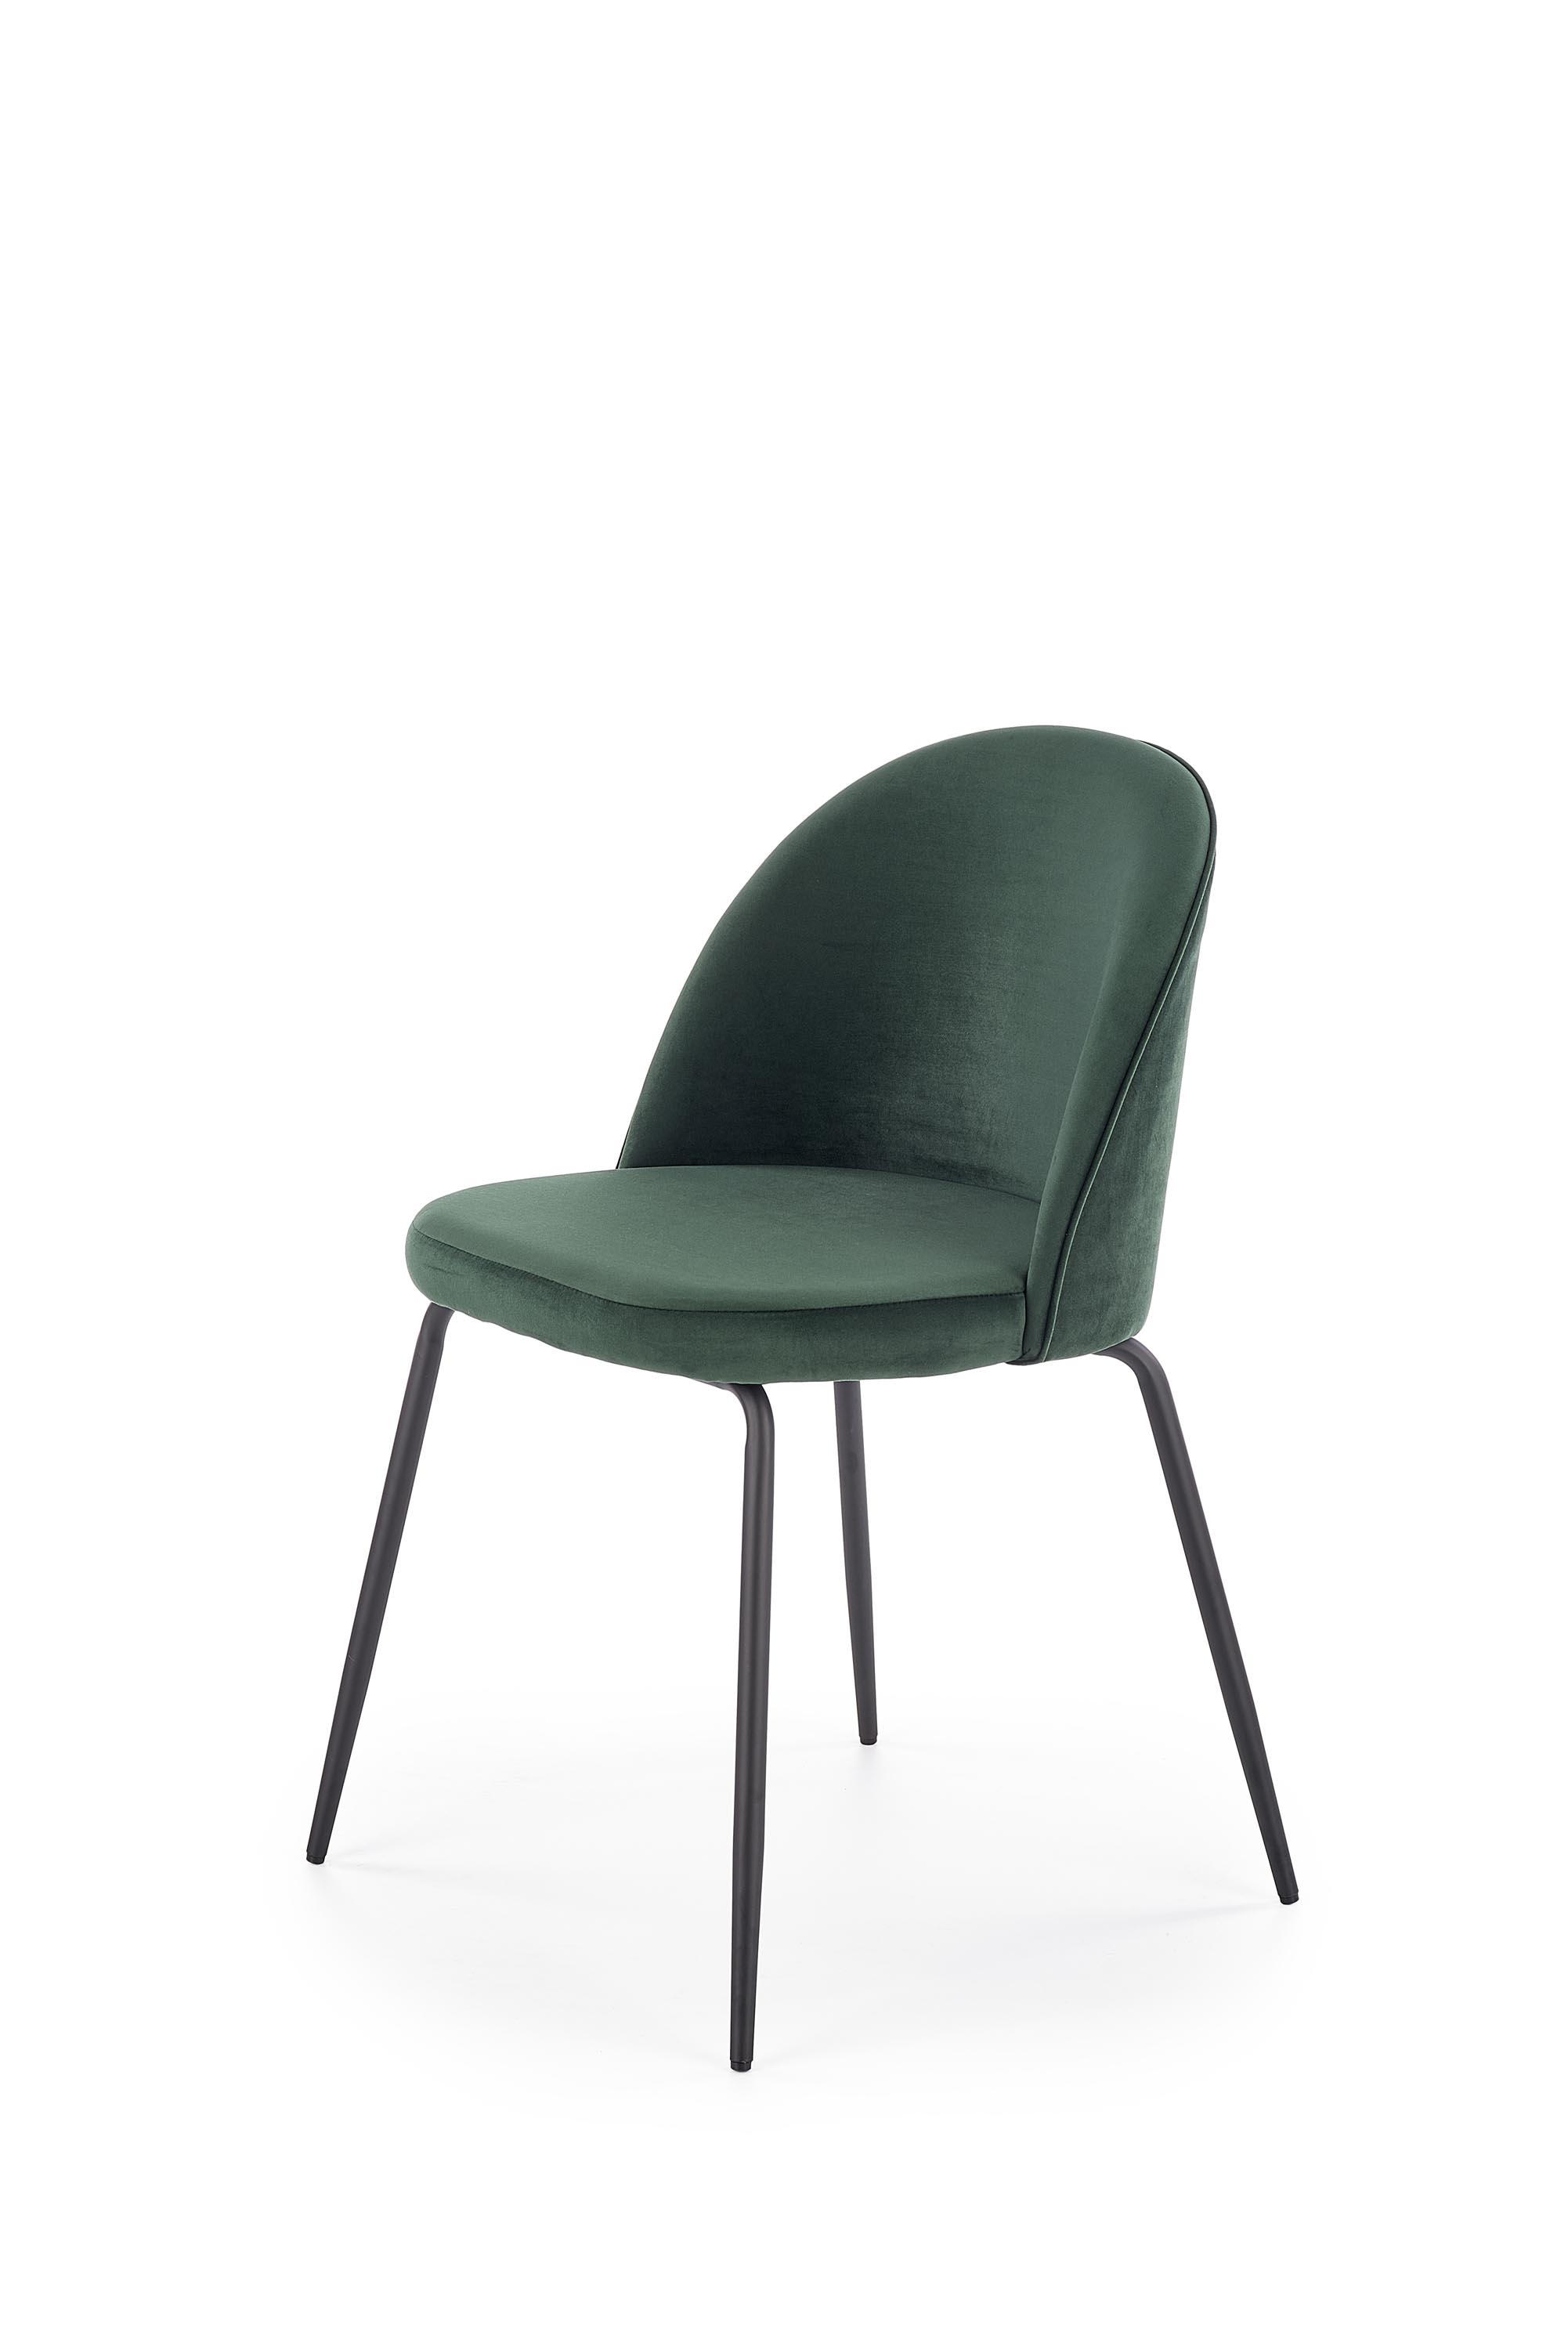 K314 széklábak - fekete, kárpit - ct zöld k314 Židle Nohy - Fekete, Čalounění - ct Zelený